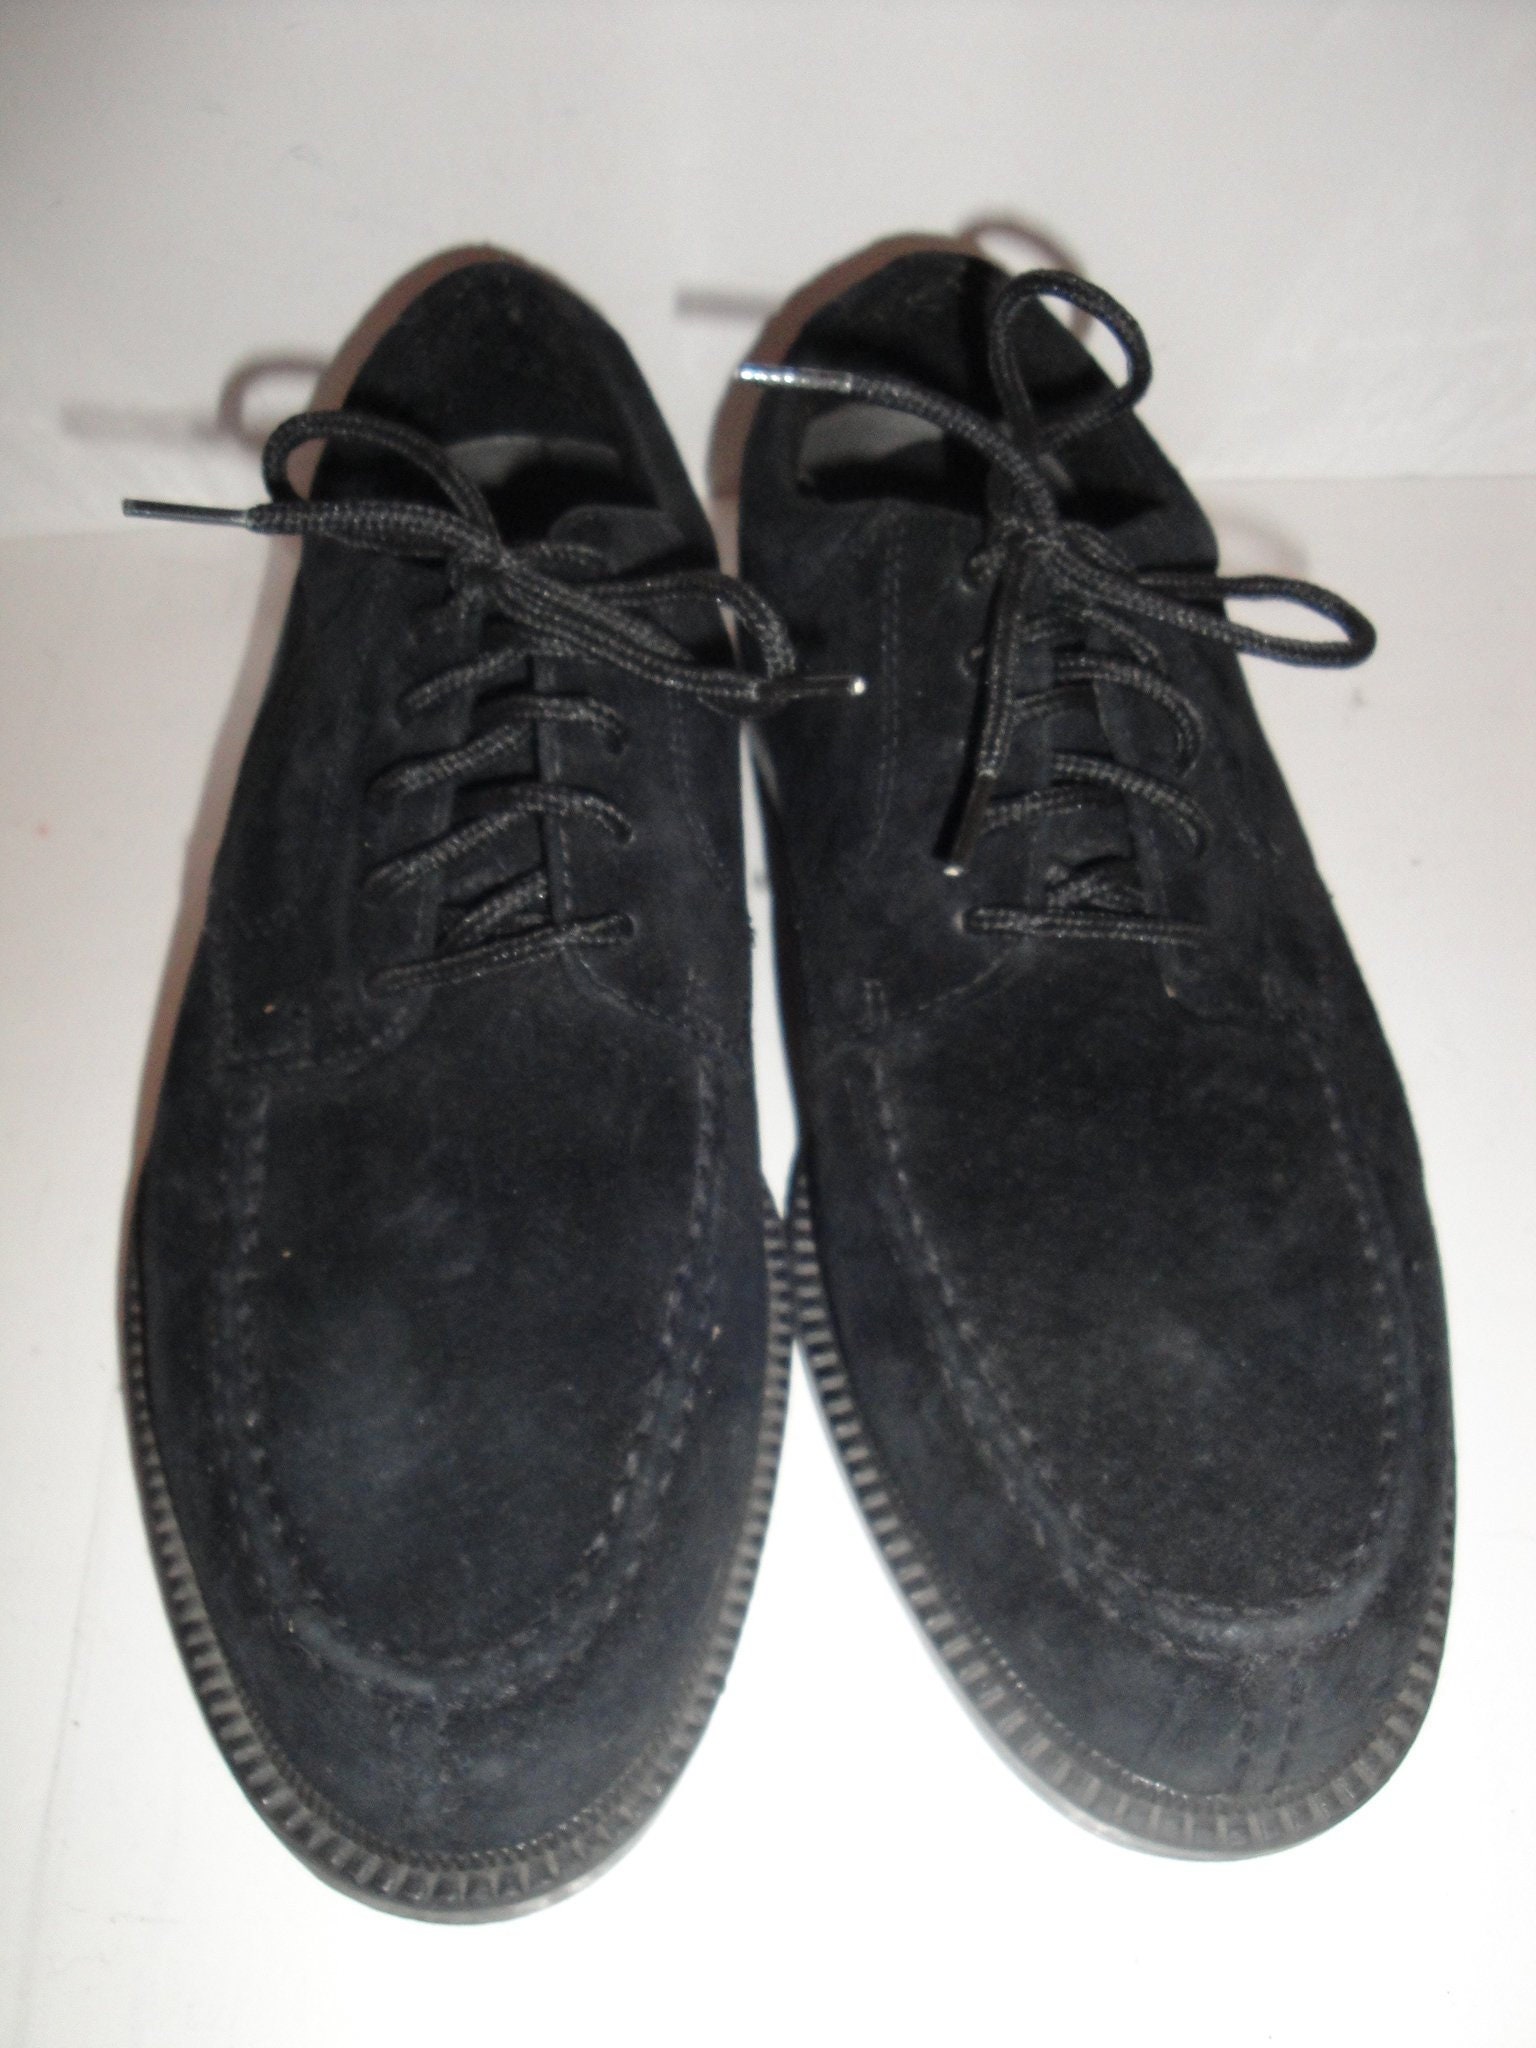 Hush Puppies Black Suede Oxfords Men's Shoe 8.5M Etsy